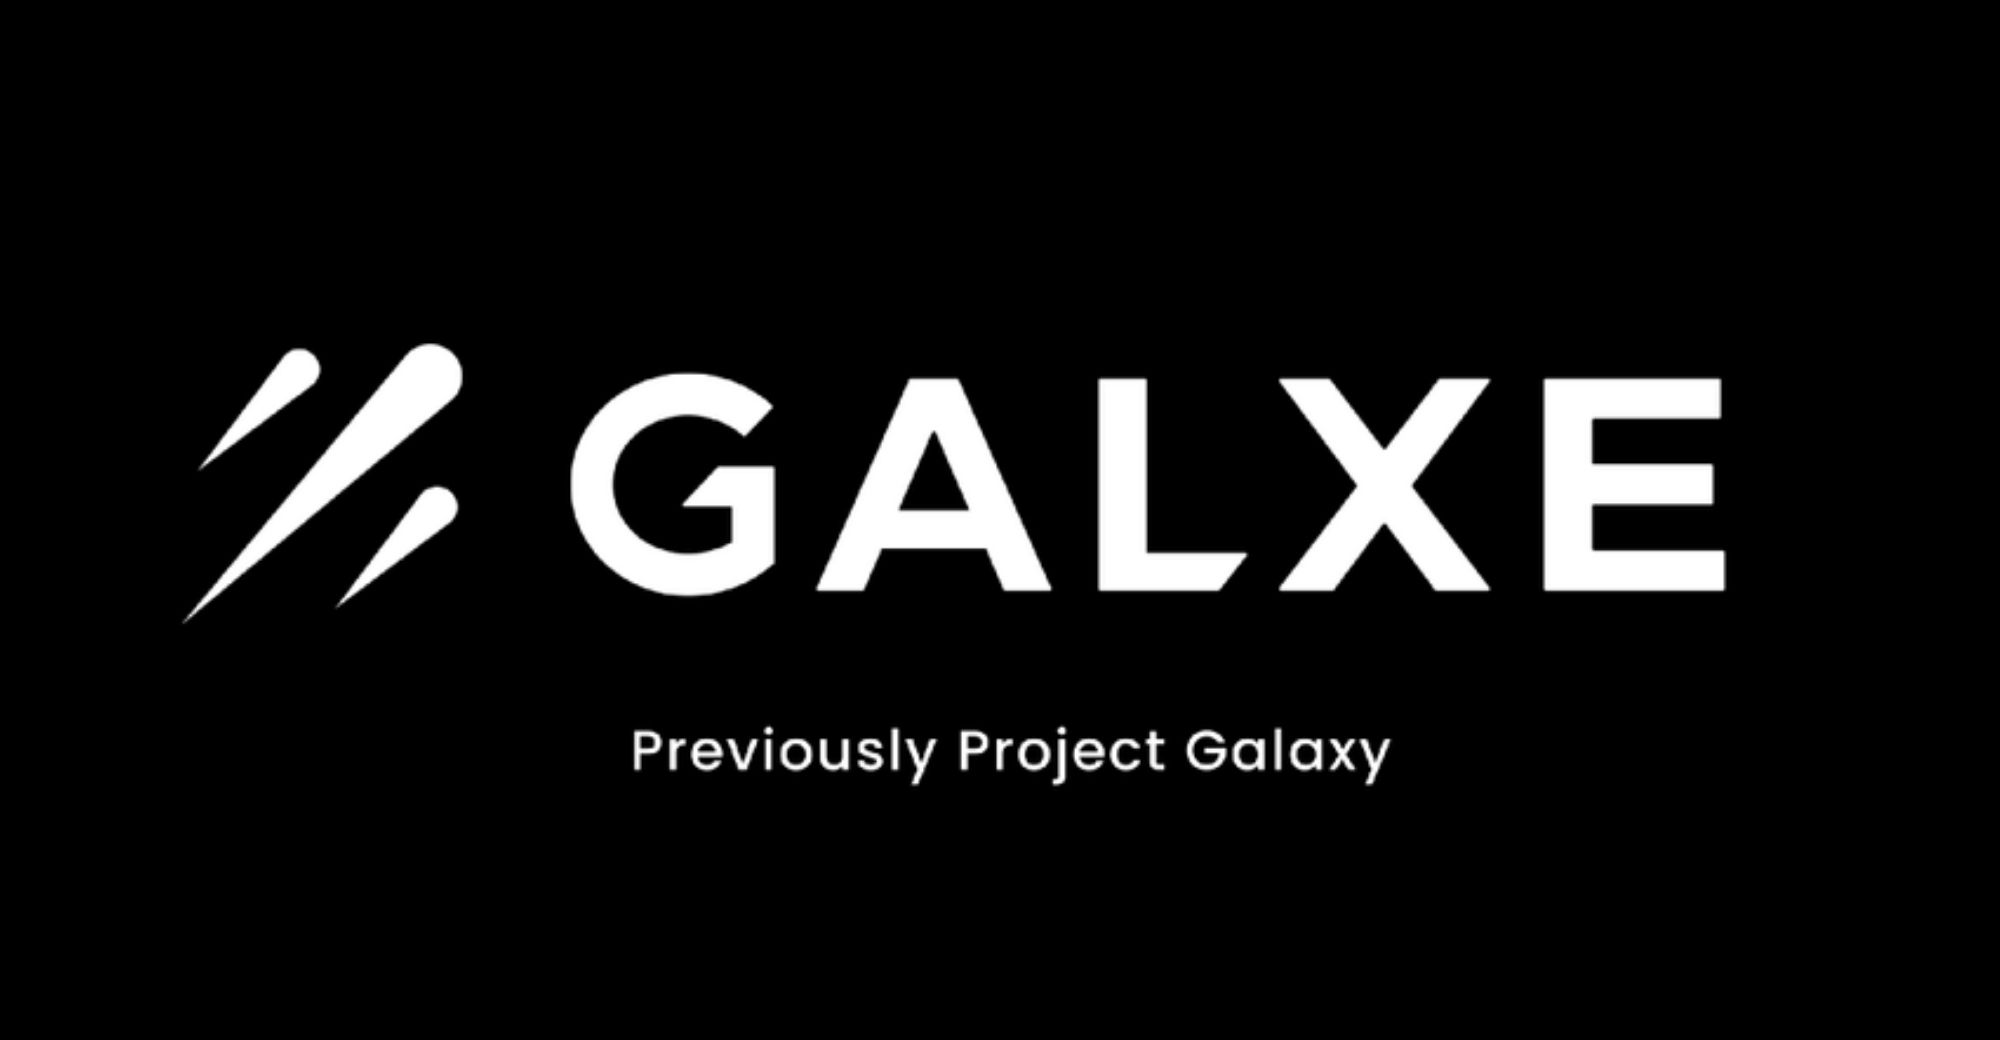 गैलेक्सी परियोजना का नाम बदलकर गैलेक्स कर दिया गया और पारिस्थितिकी तंत्र में विकसित हुआ